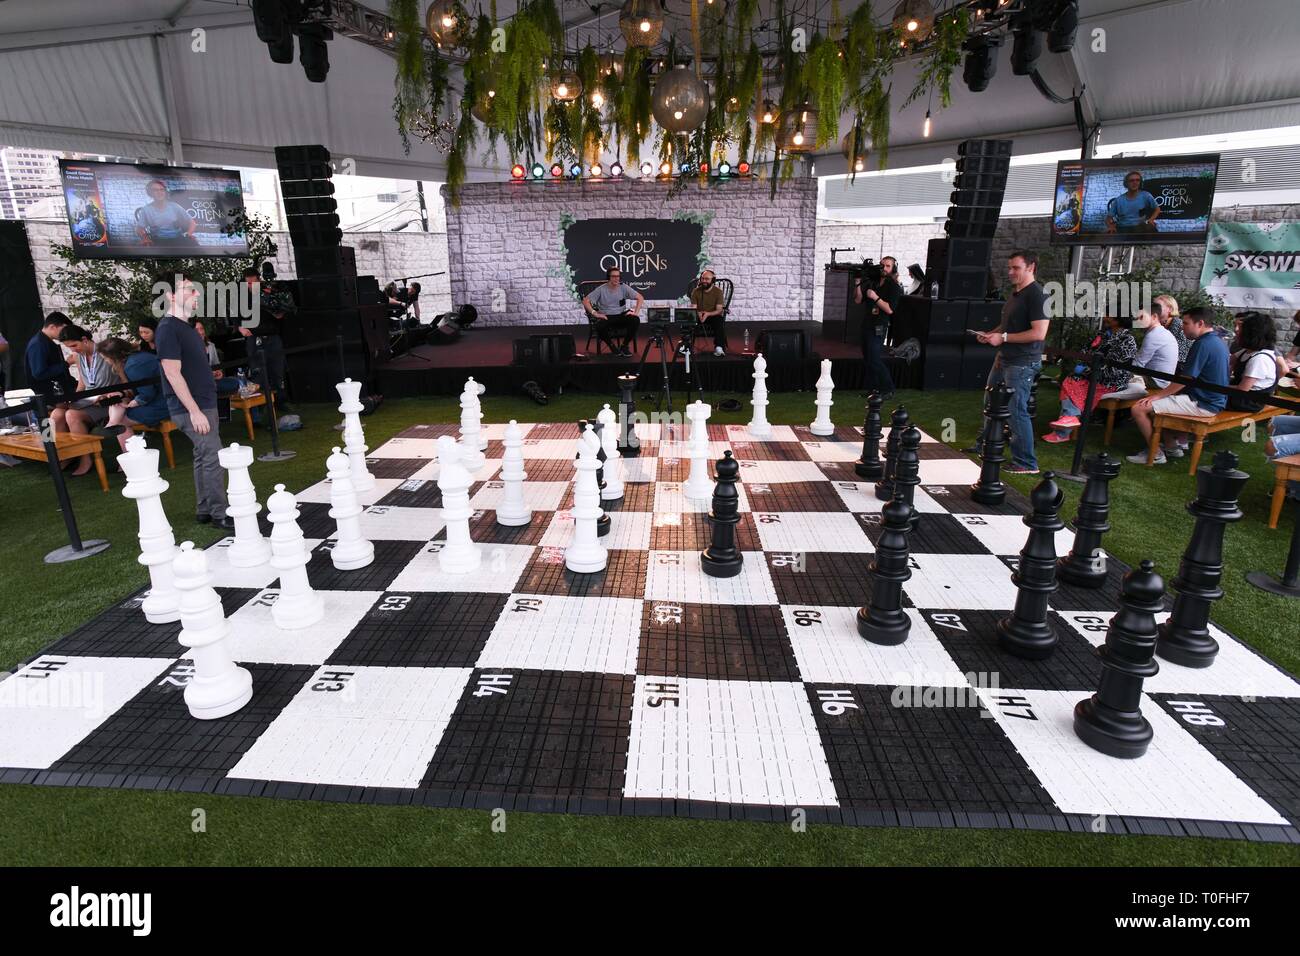 Tablero de ajedrez de 10 millones de dólares